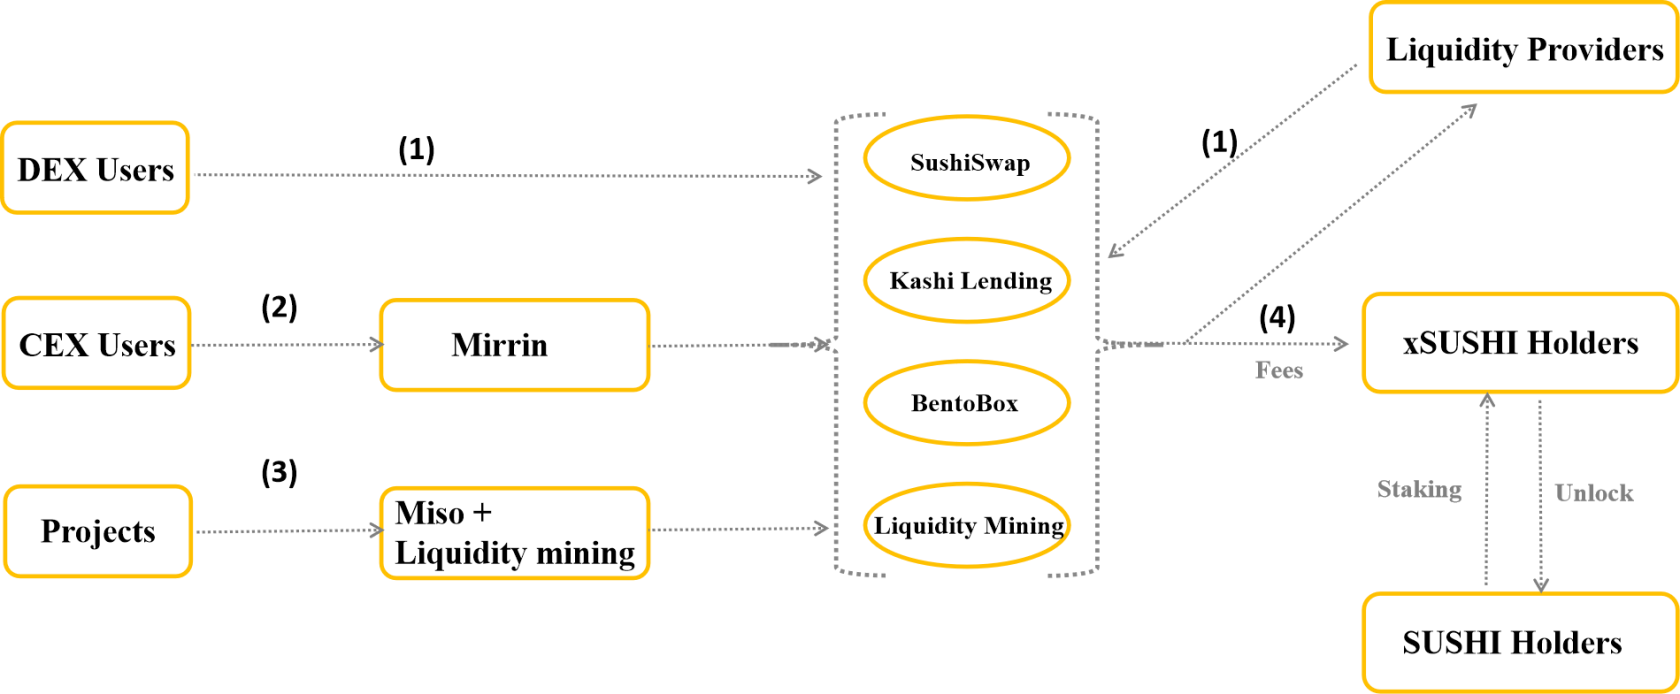 Analiza modelu funkcjonowania SushiSwap – Model wieloproduktowy